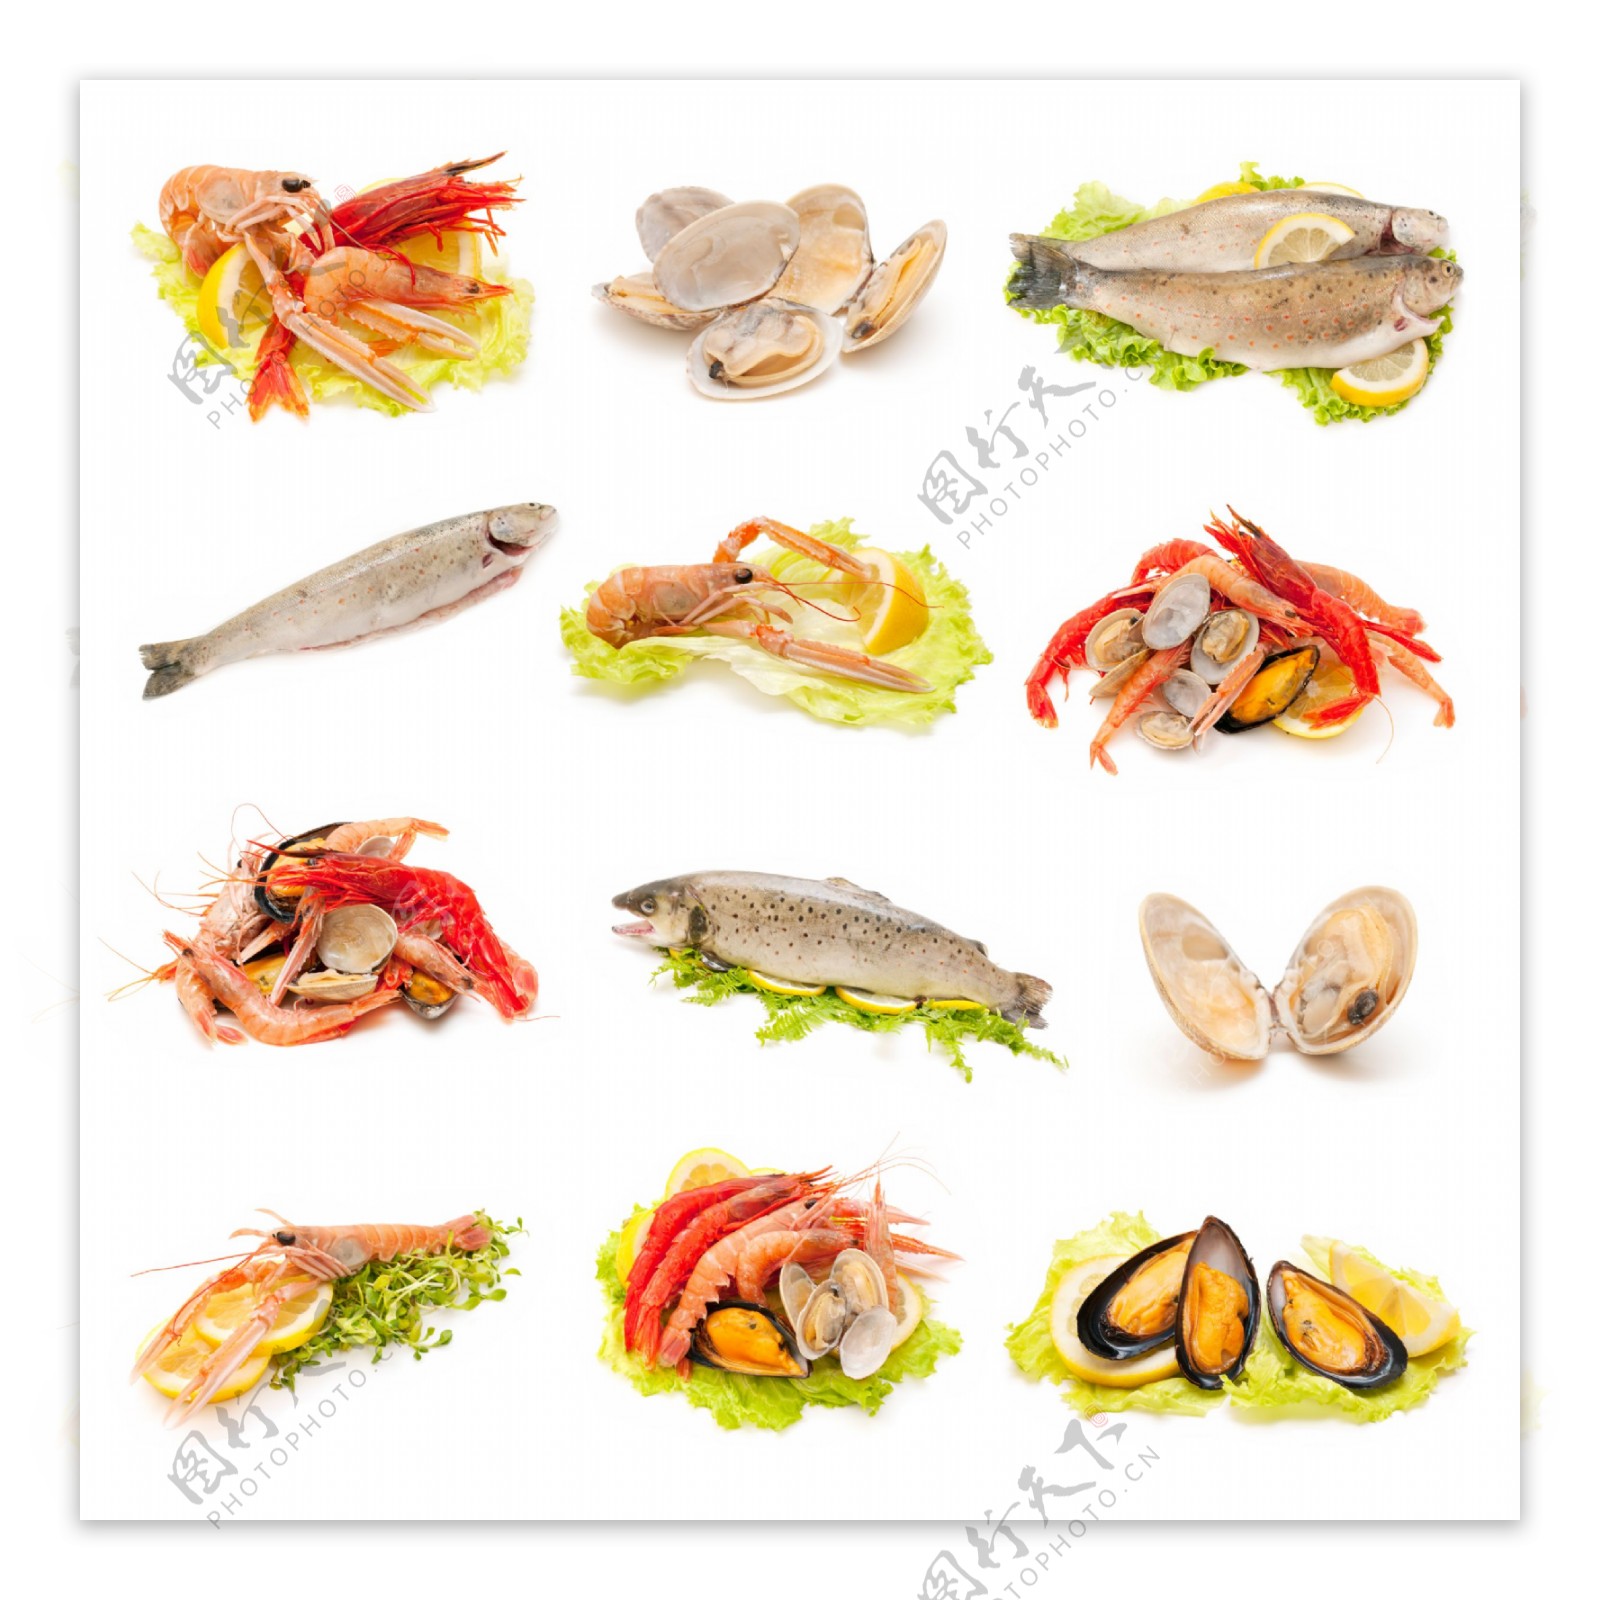 海鲜食物原料图片